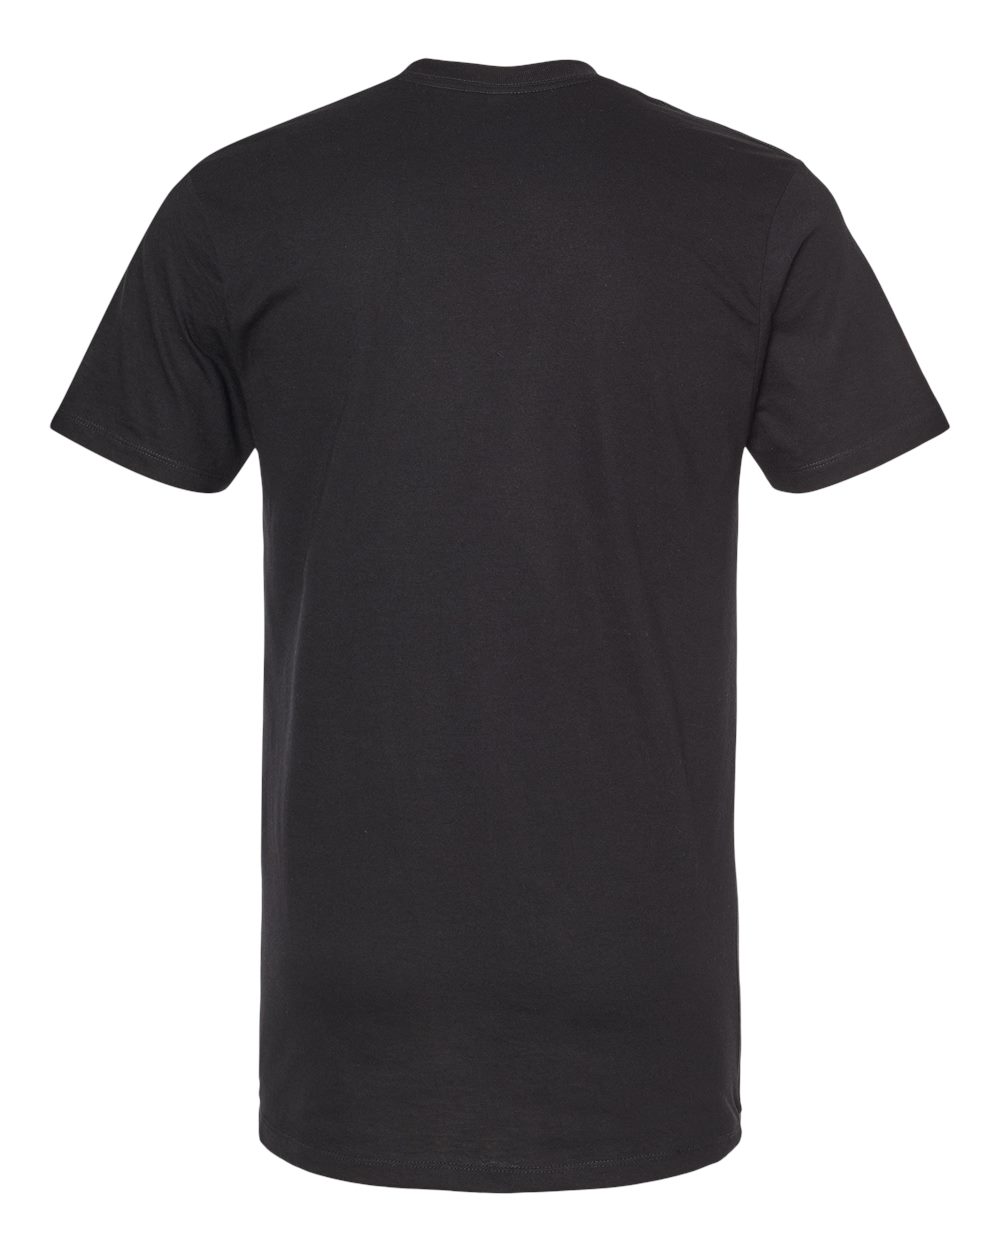 Zazzle Puro Tejas T-Shirt, Men's, Size: Adult L, Black